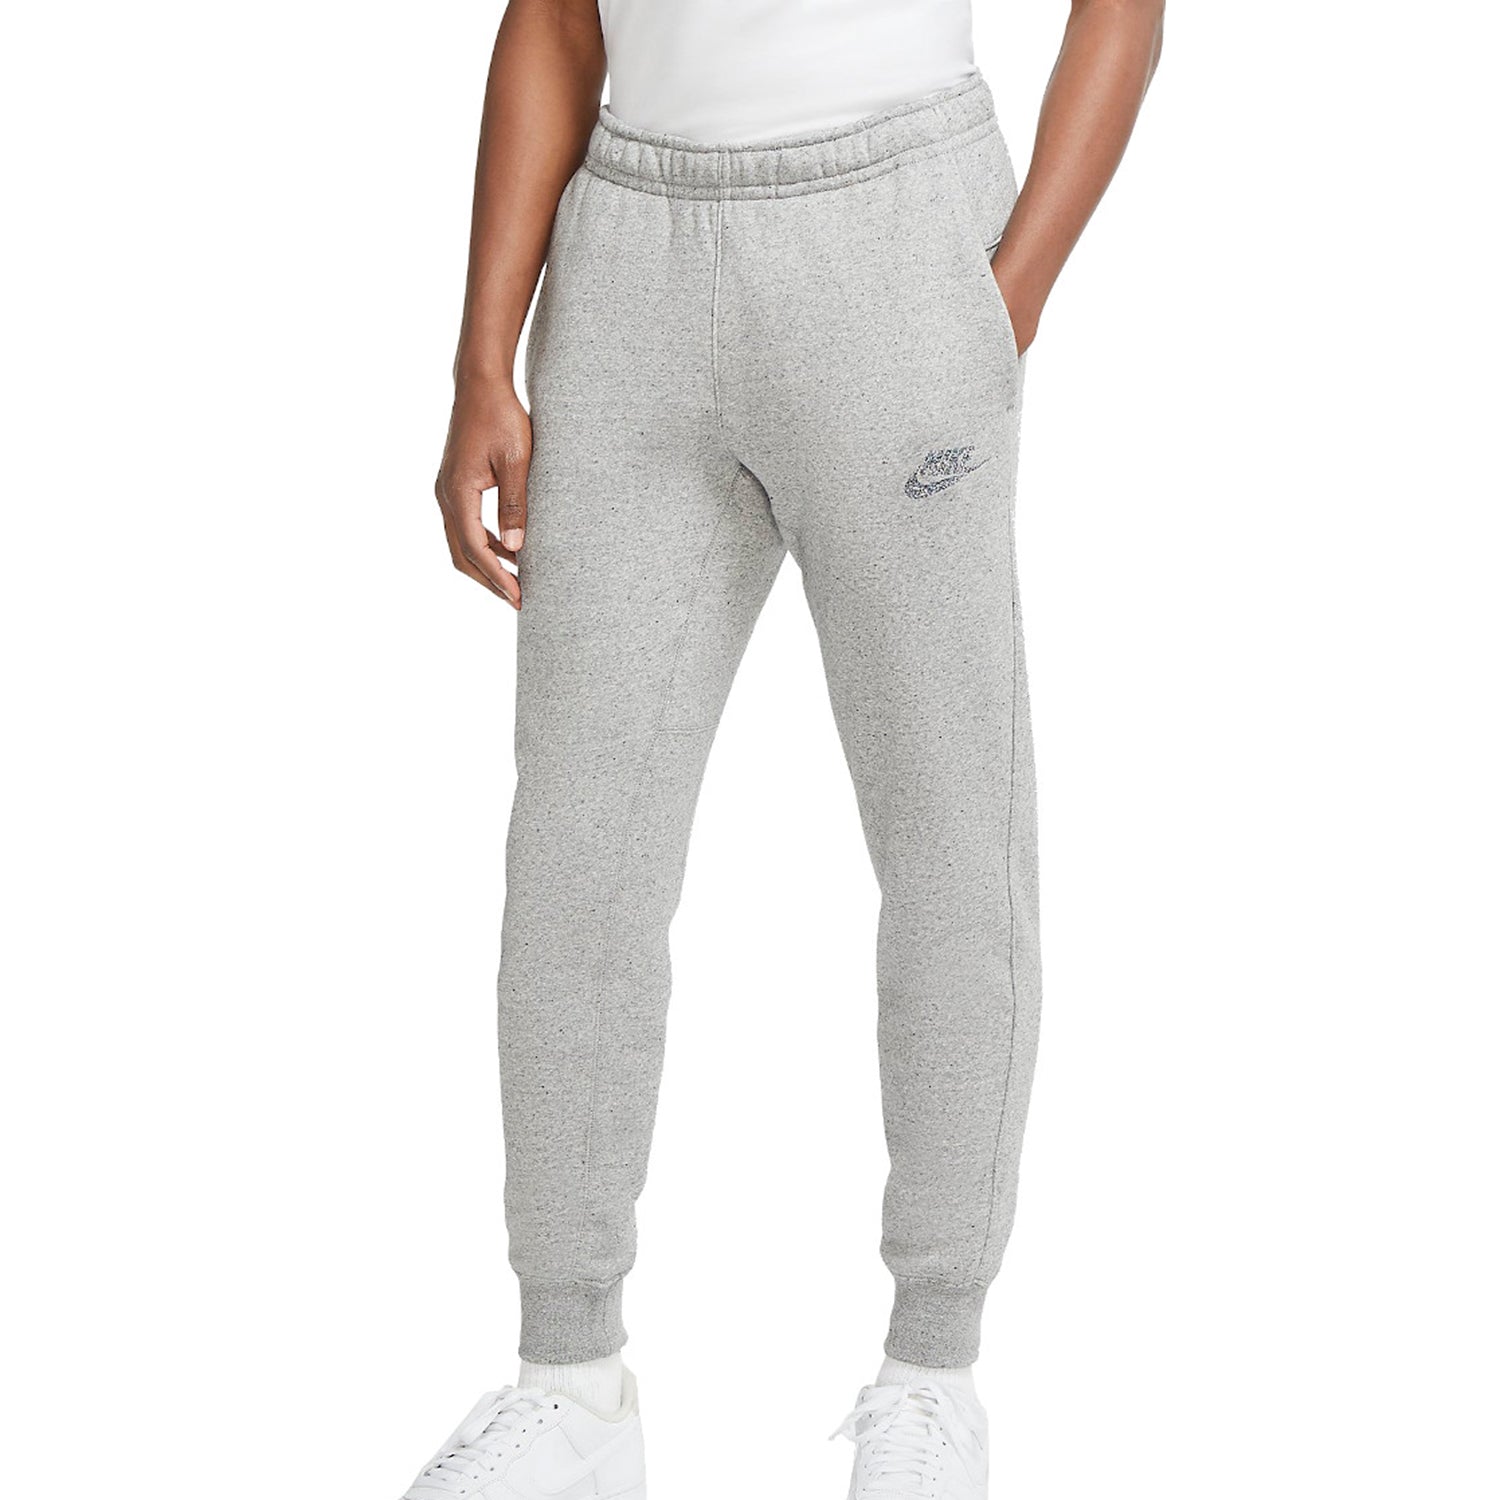 Nike Sportswear Club Fleece Joggers Mens Style : Cu4379